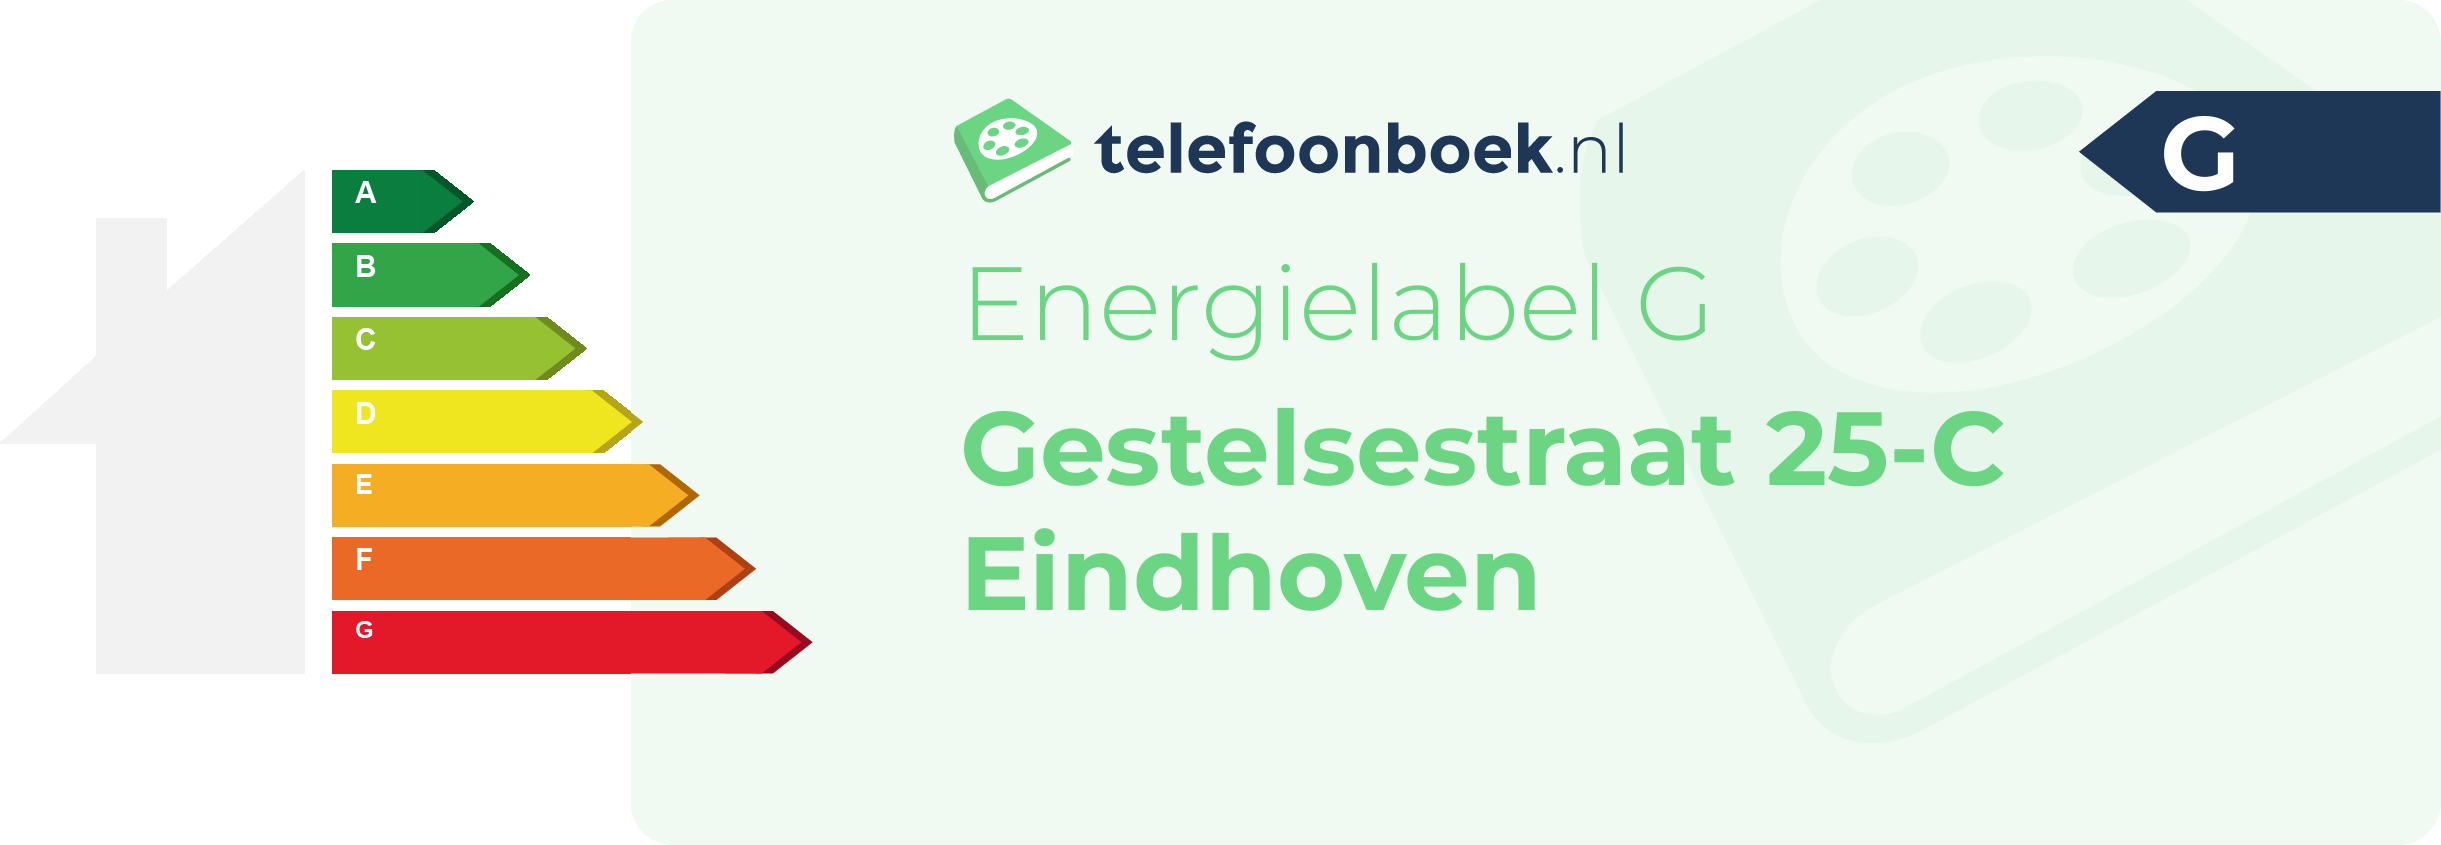 Energielabel Gestelsestraat 25-C Eindhoven